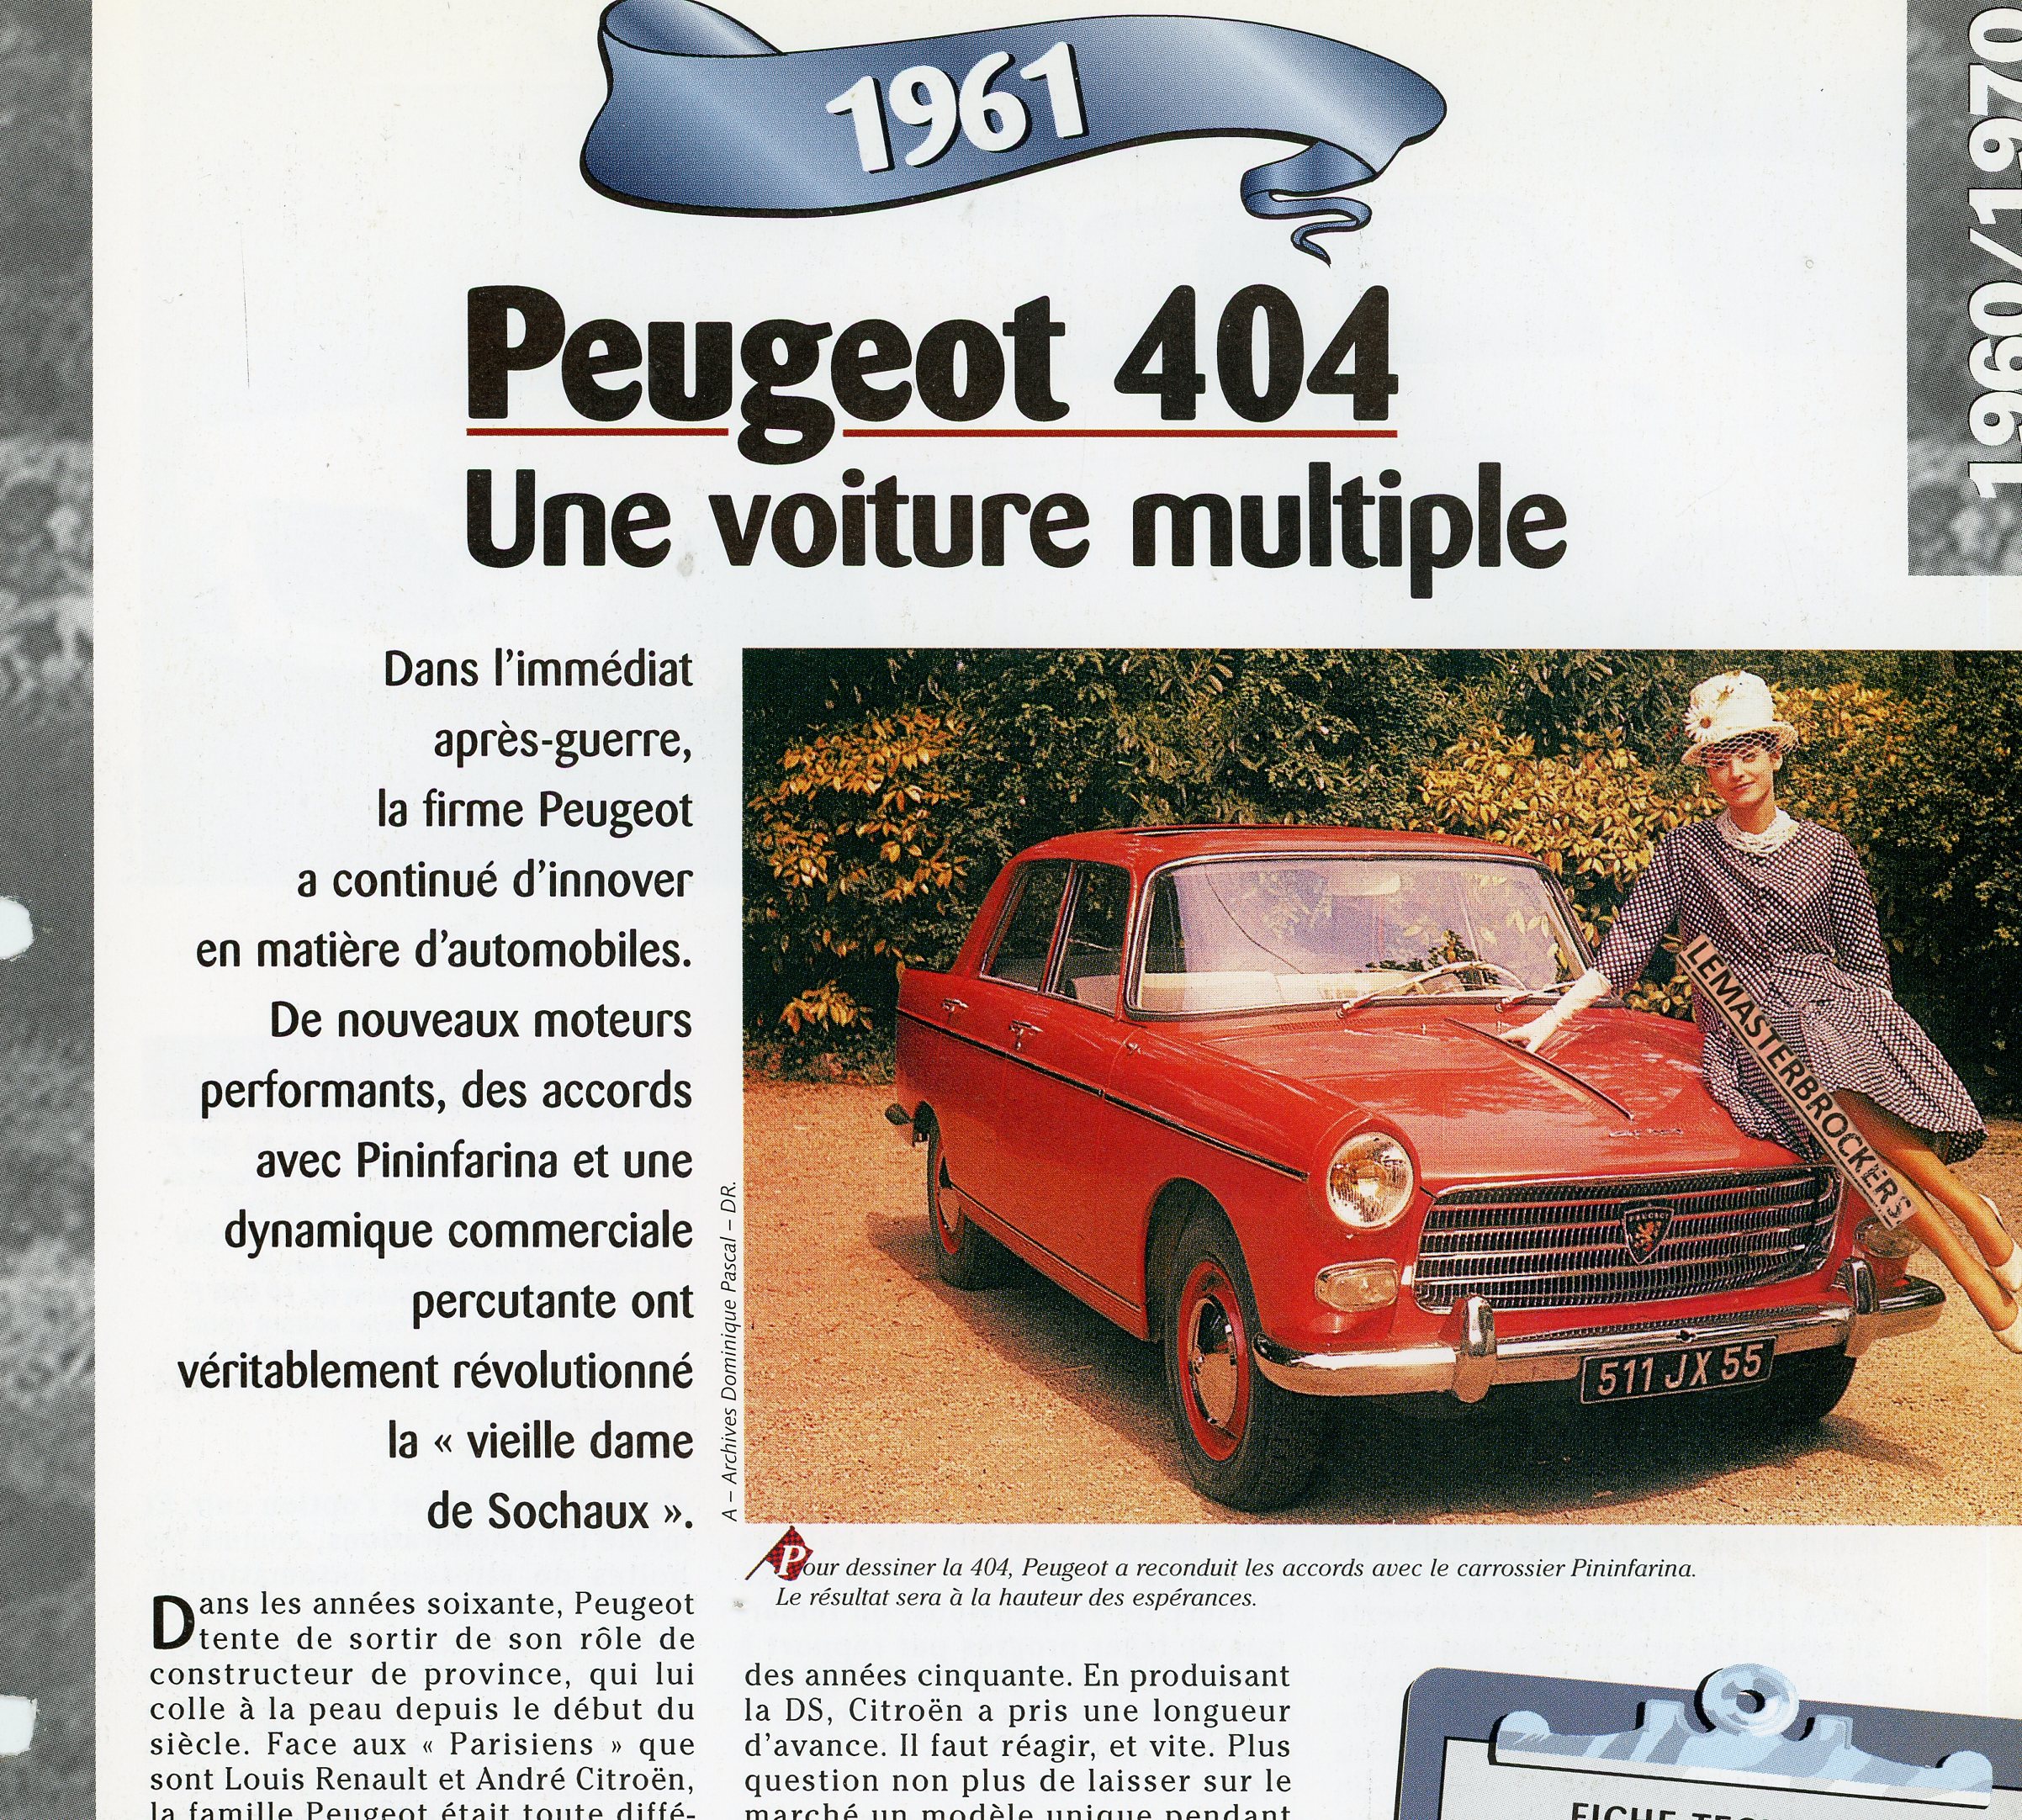 PEUGEOT-404-1961-FICHE-TECHNIQUE-VOITURE-LEMASTERBROCKERS